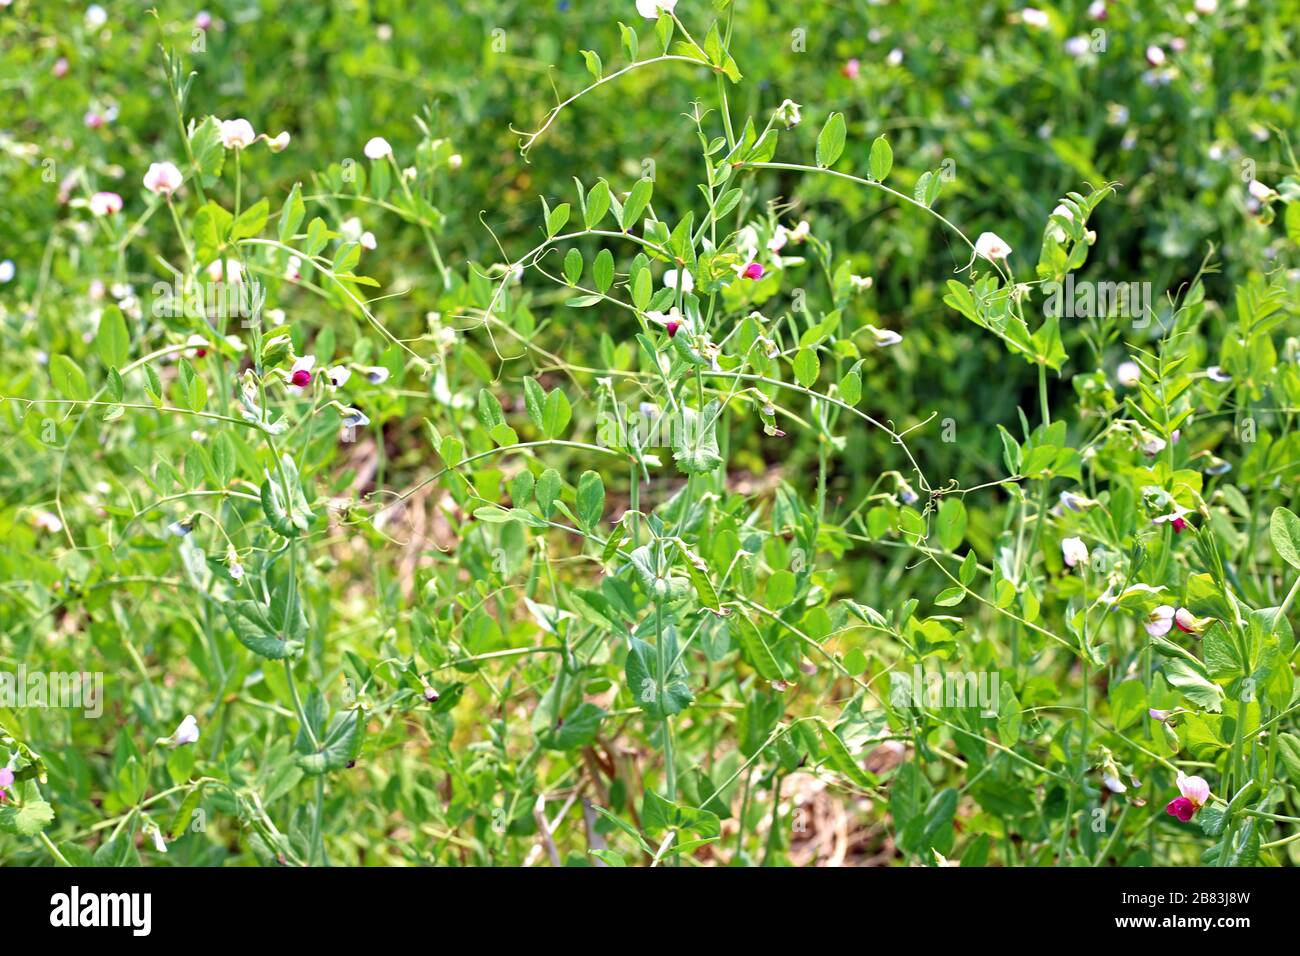 Piante verdi fresche di piselli crescono in giardino Foto Stock